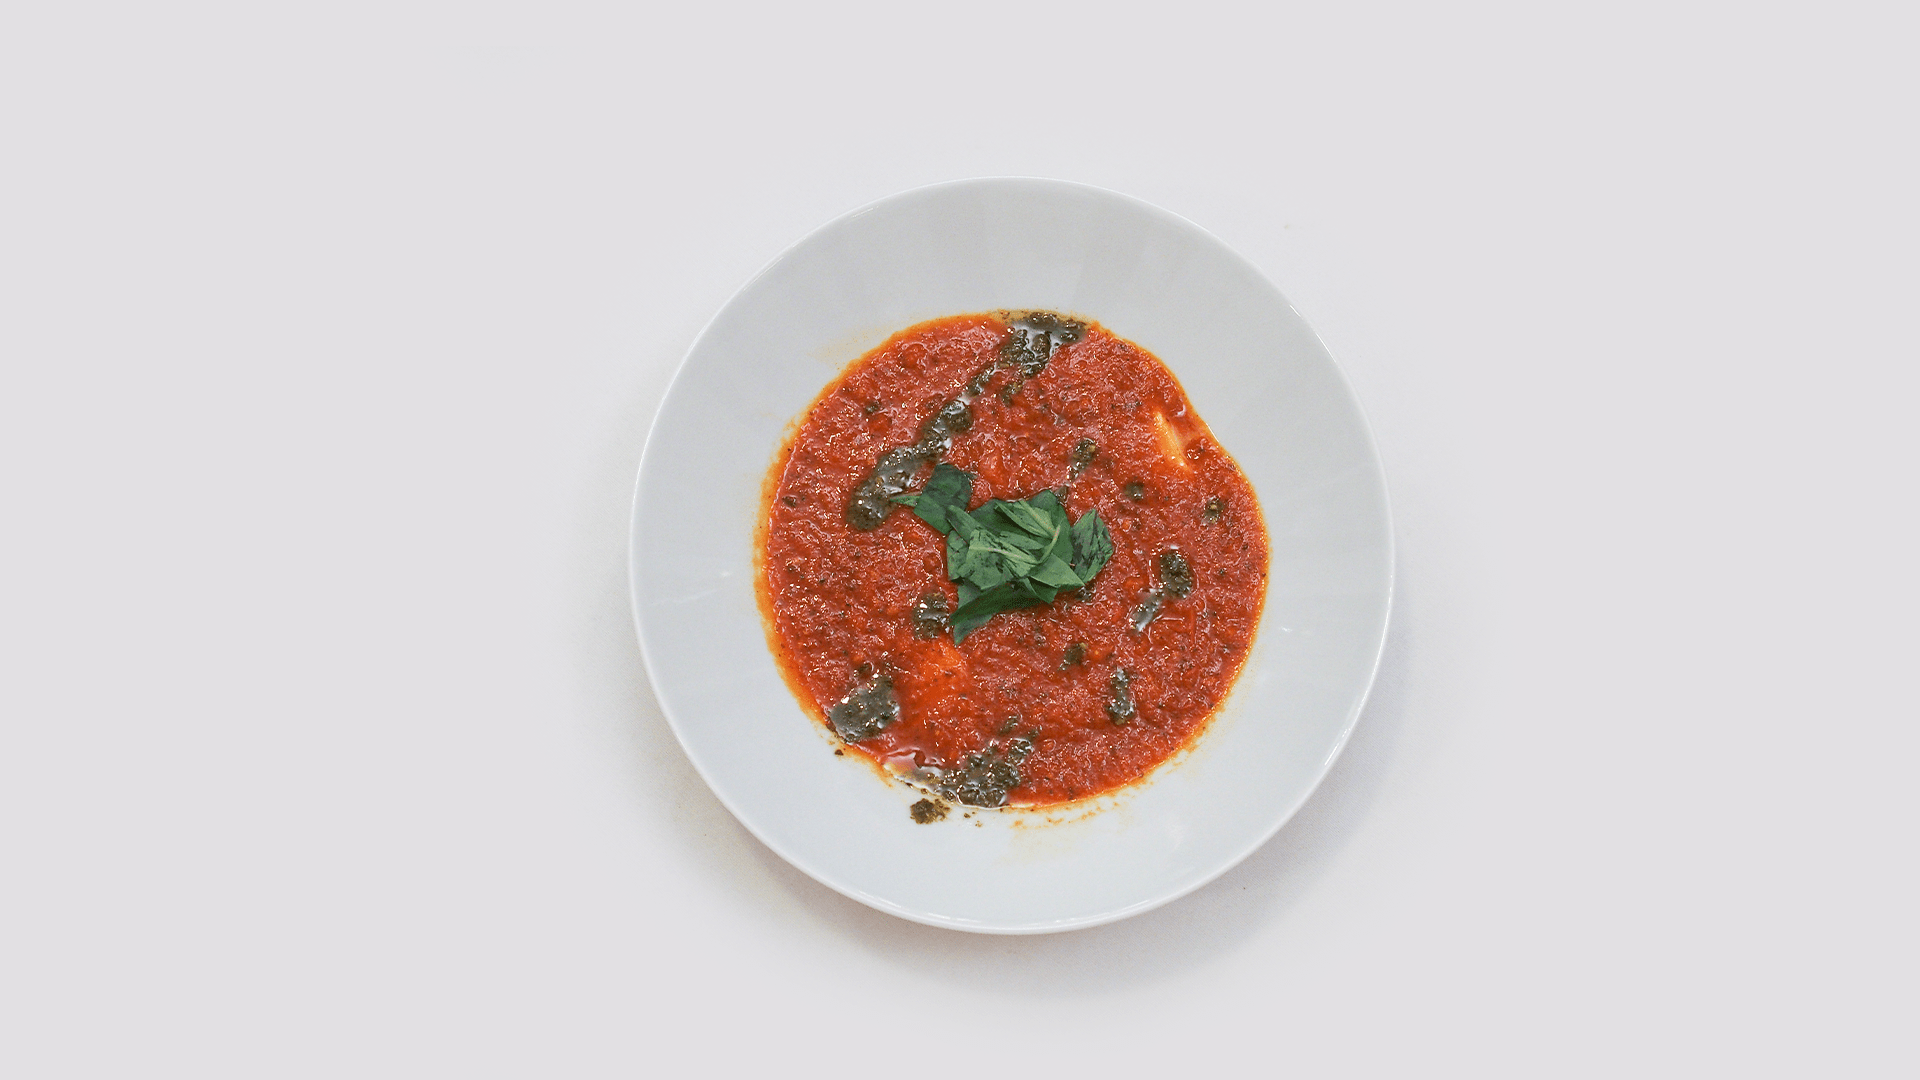 Tomatová polévka